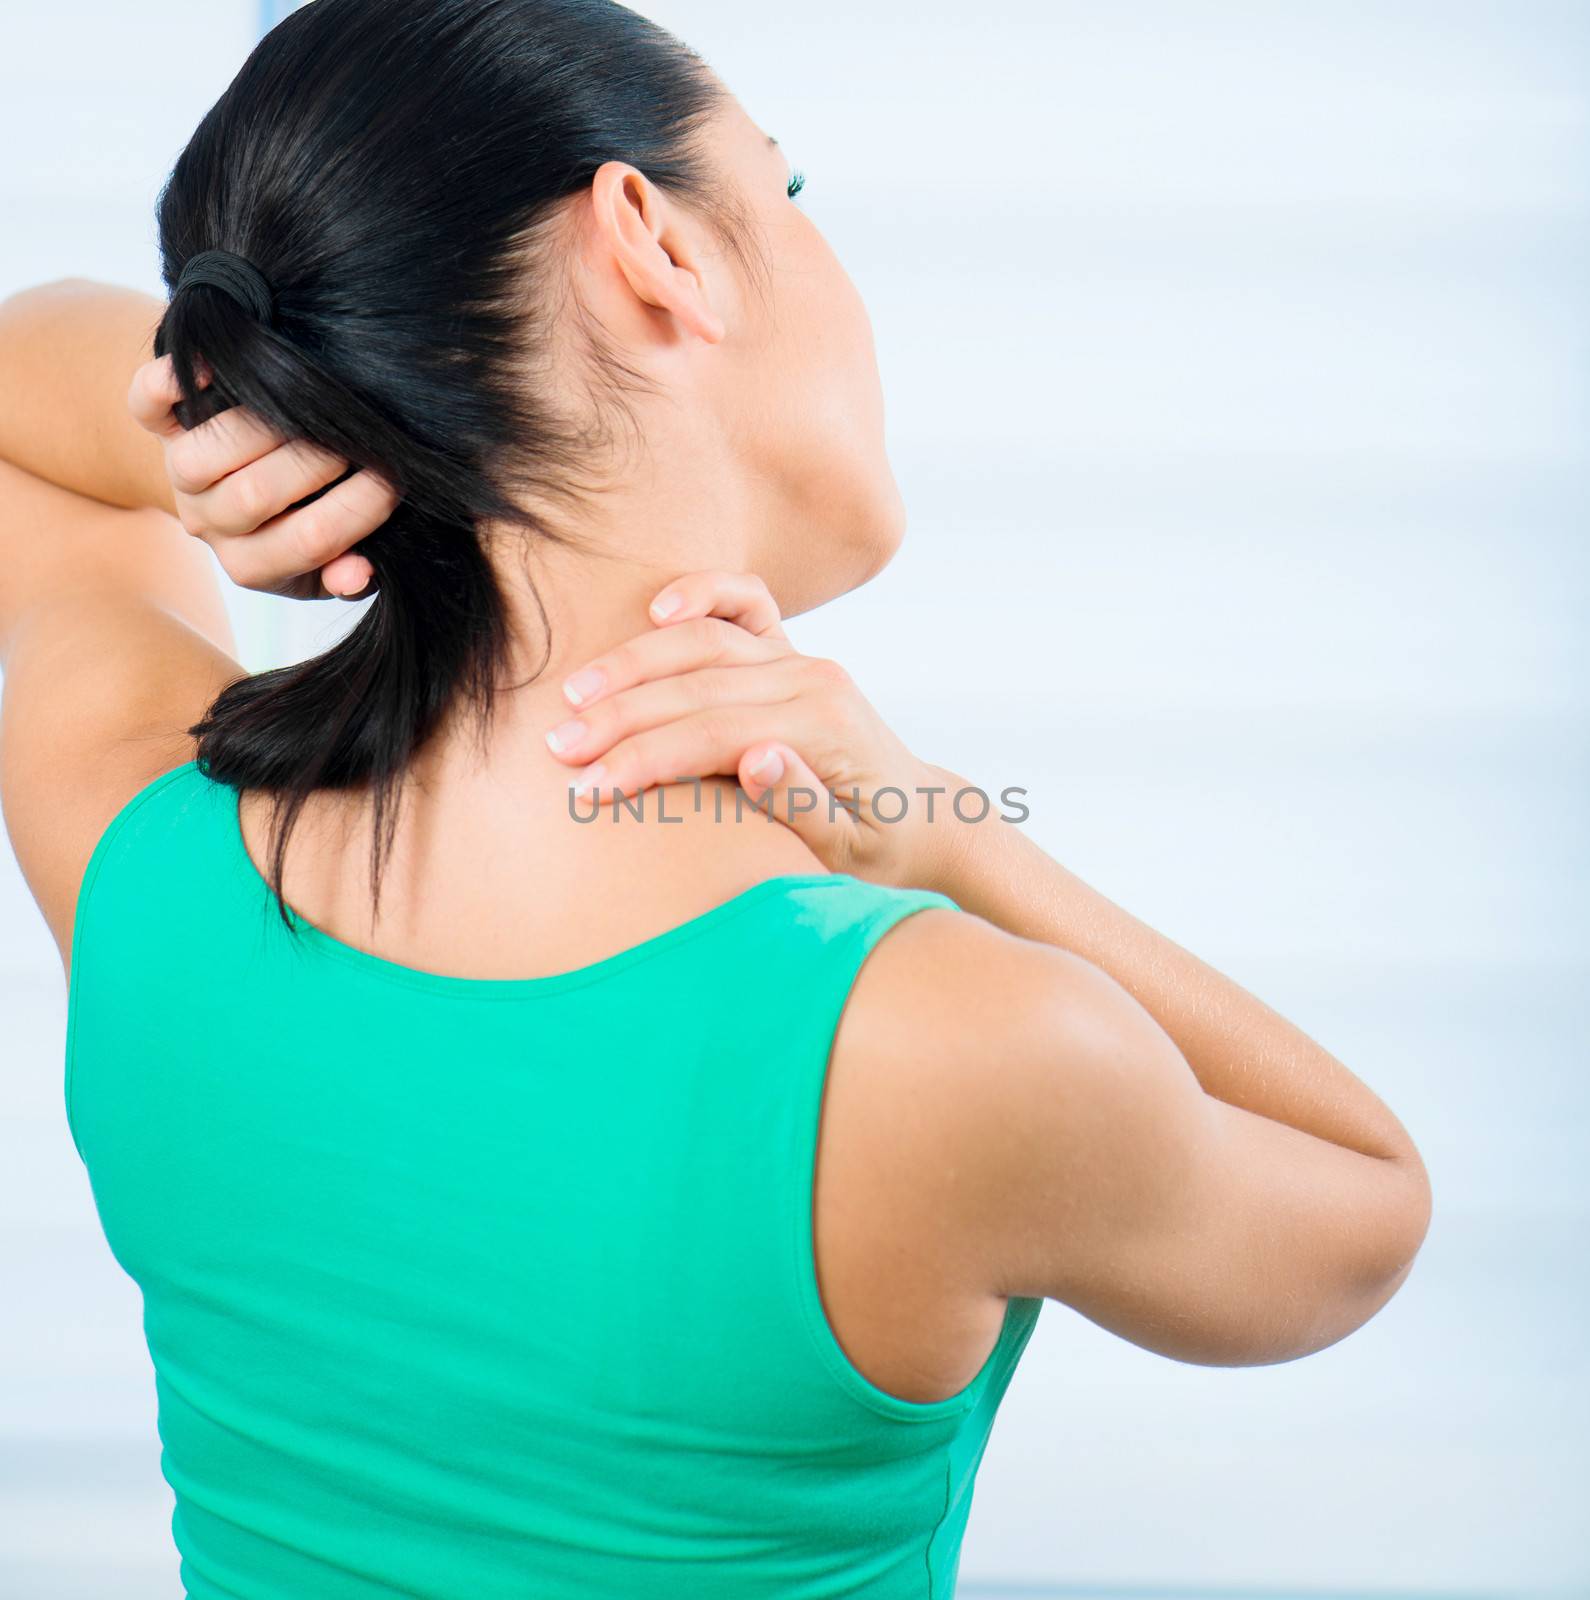 Woman pain in neck by GekaSkr